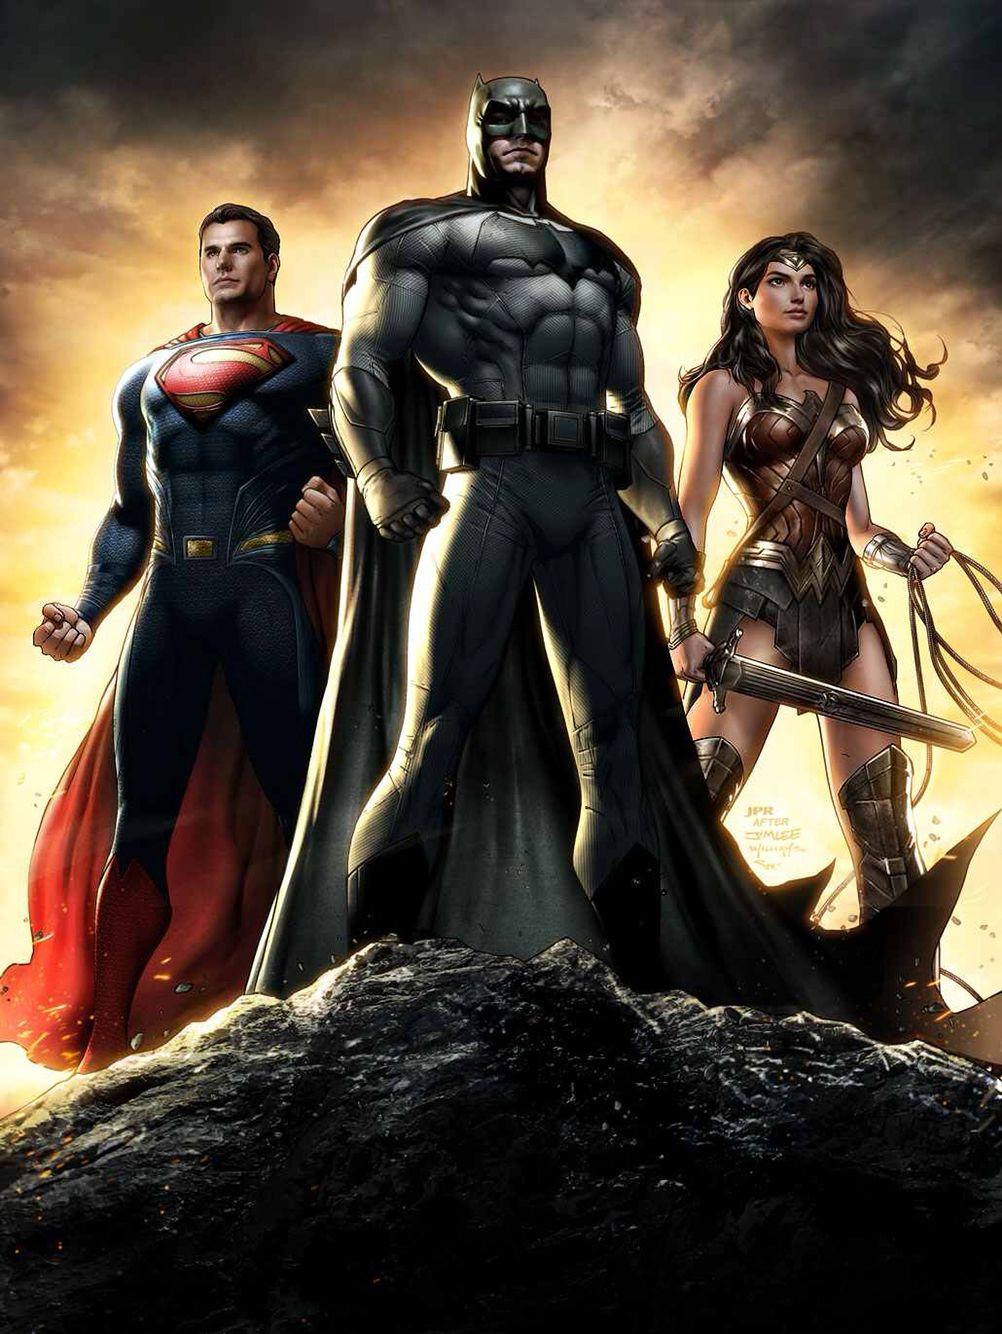 Superman, Batman & Wonder Woman wallpaper. Batman v